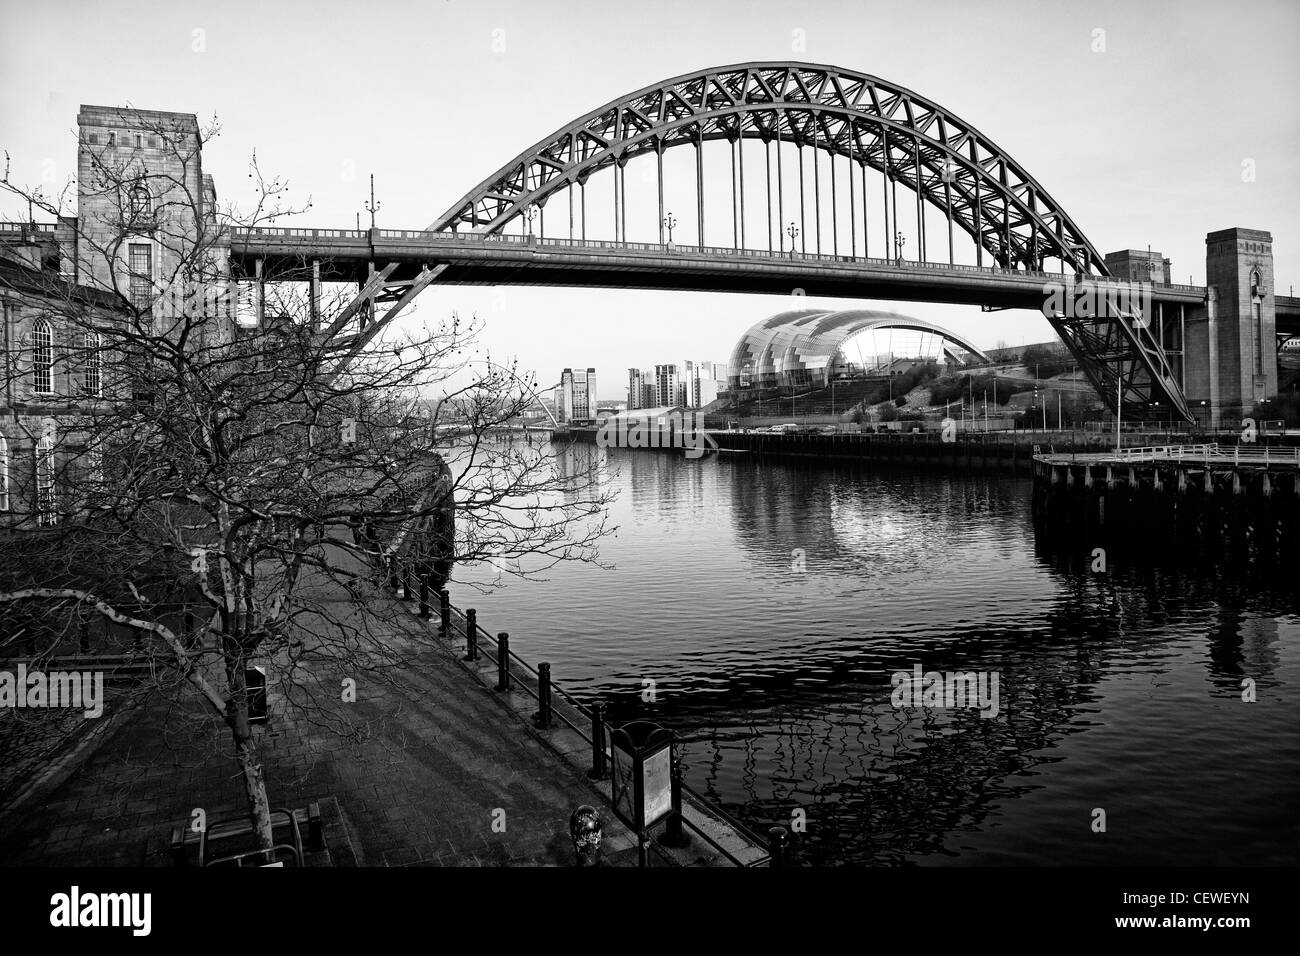 Tyne Bridge tiré du côté de Newcastle avec Sage, les pays baltes et le Millenium Bridge sur la rivière Tyne, Newcastle-upon-Tyne Banque D'Images